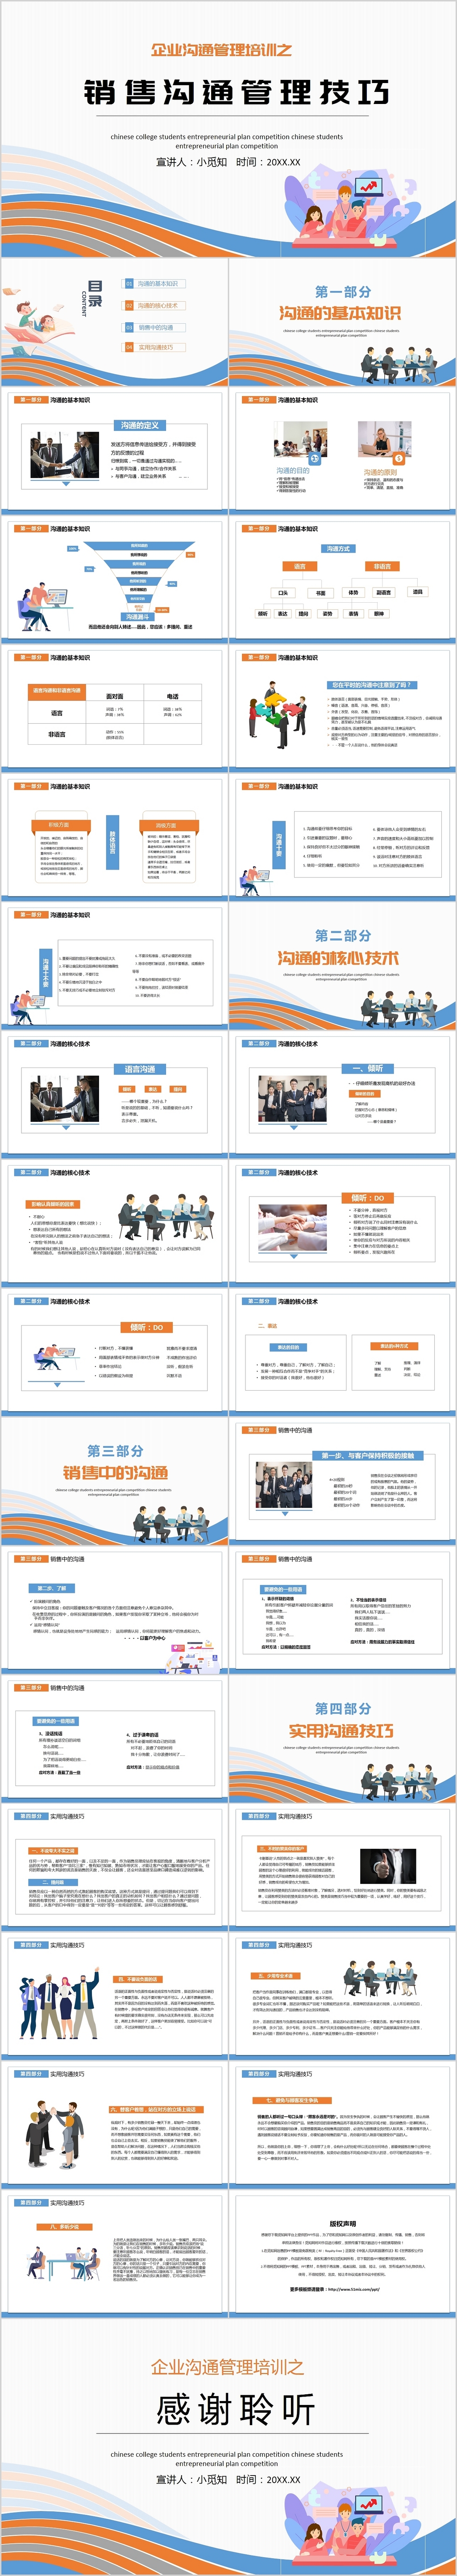 橙蓝简约商务企业沟通培训之销售沟通技巧课件企业培训PPT模板